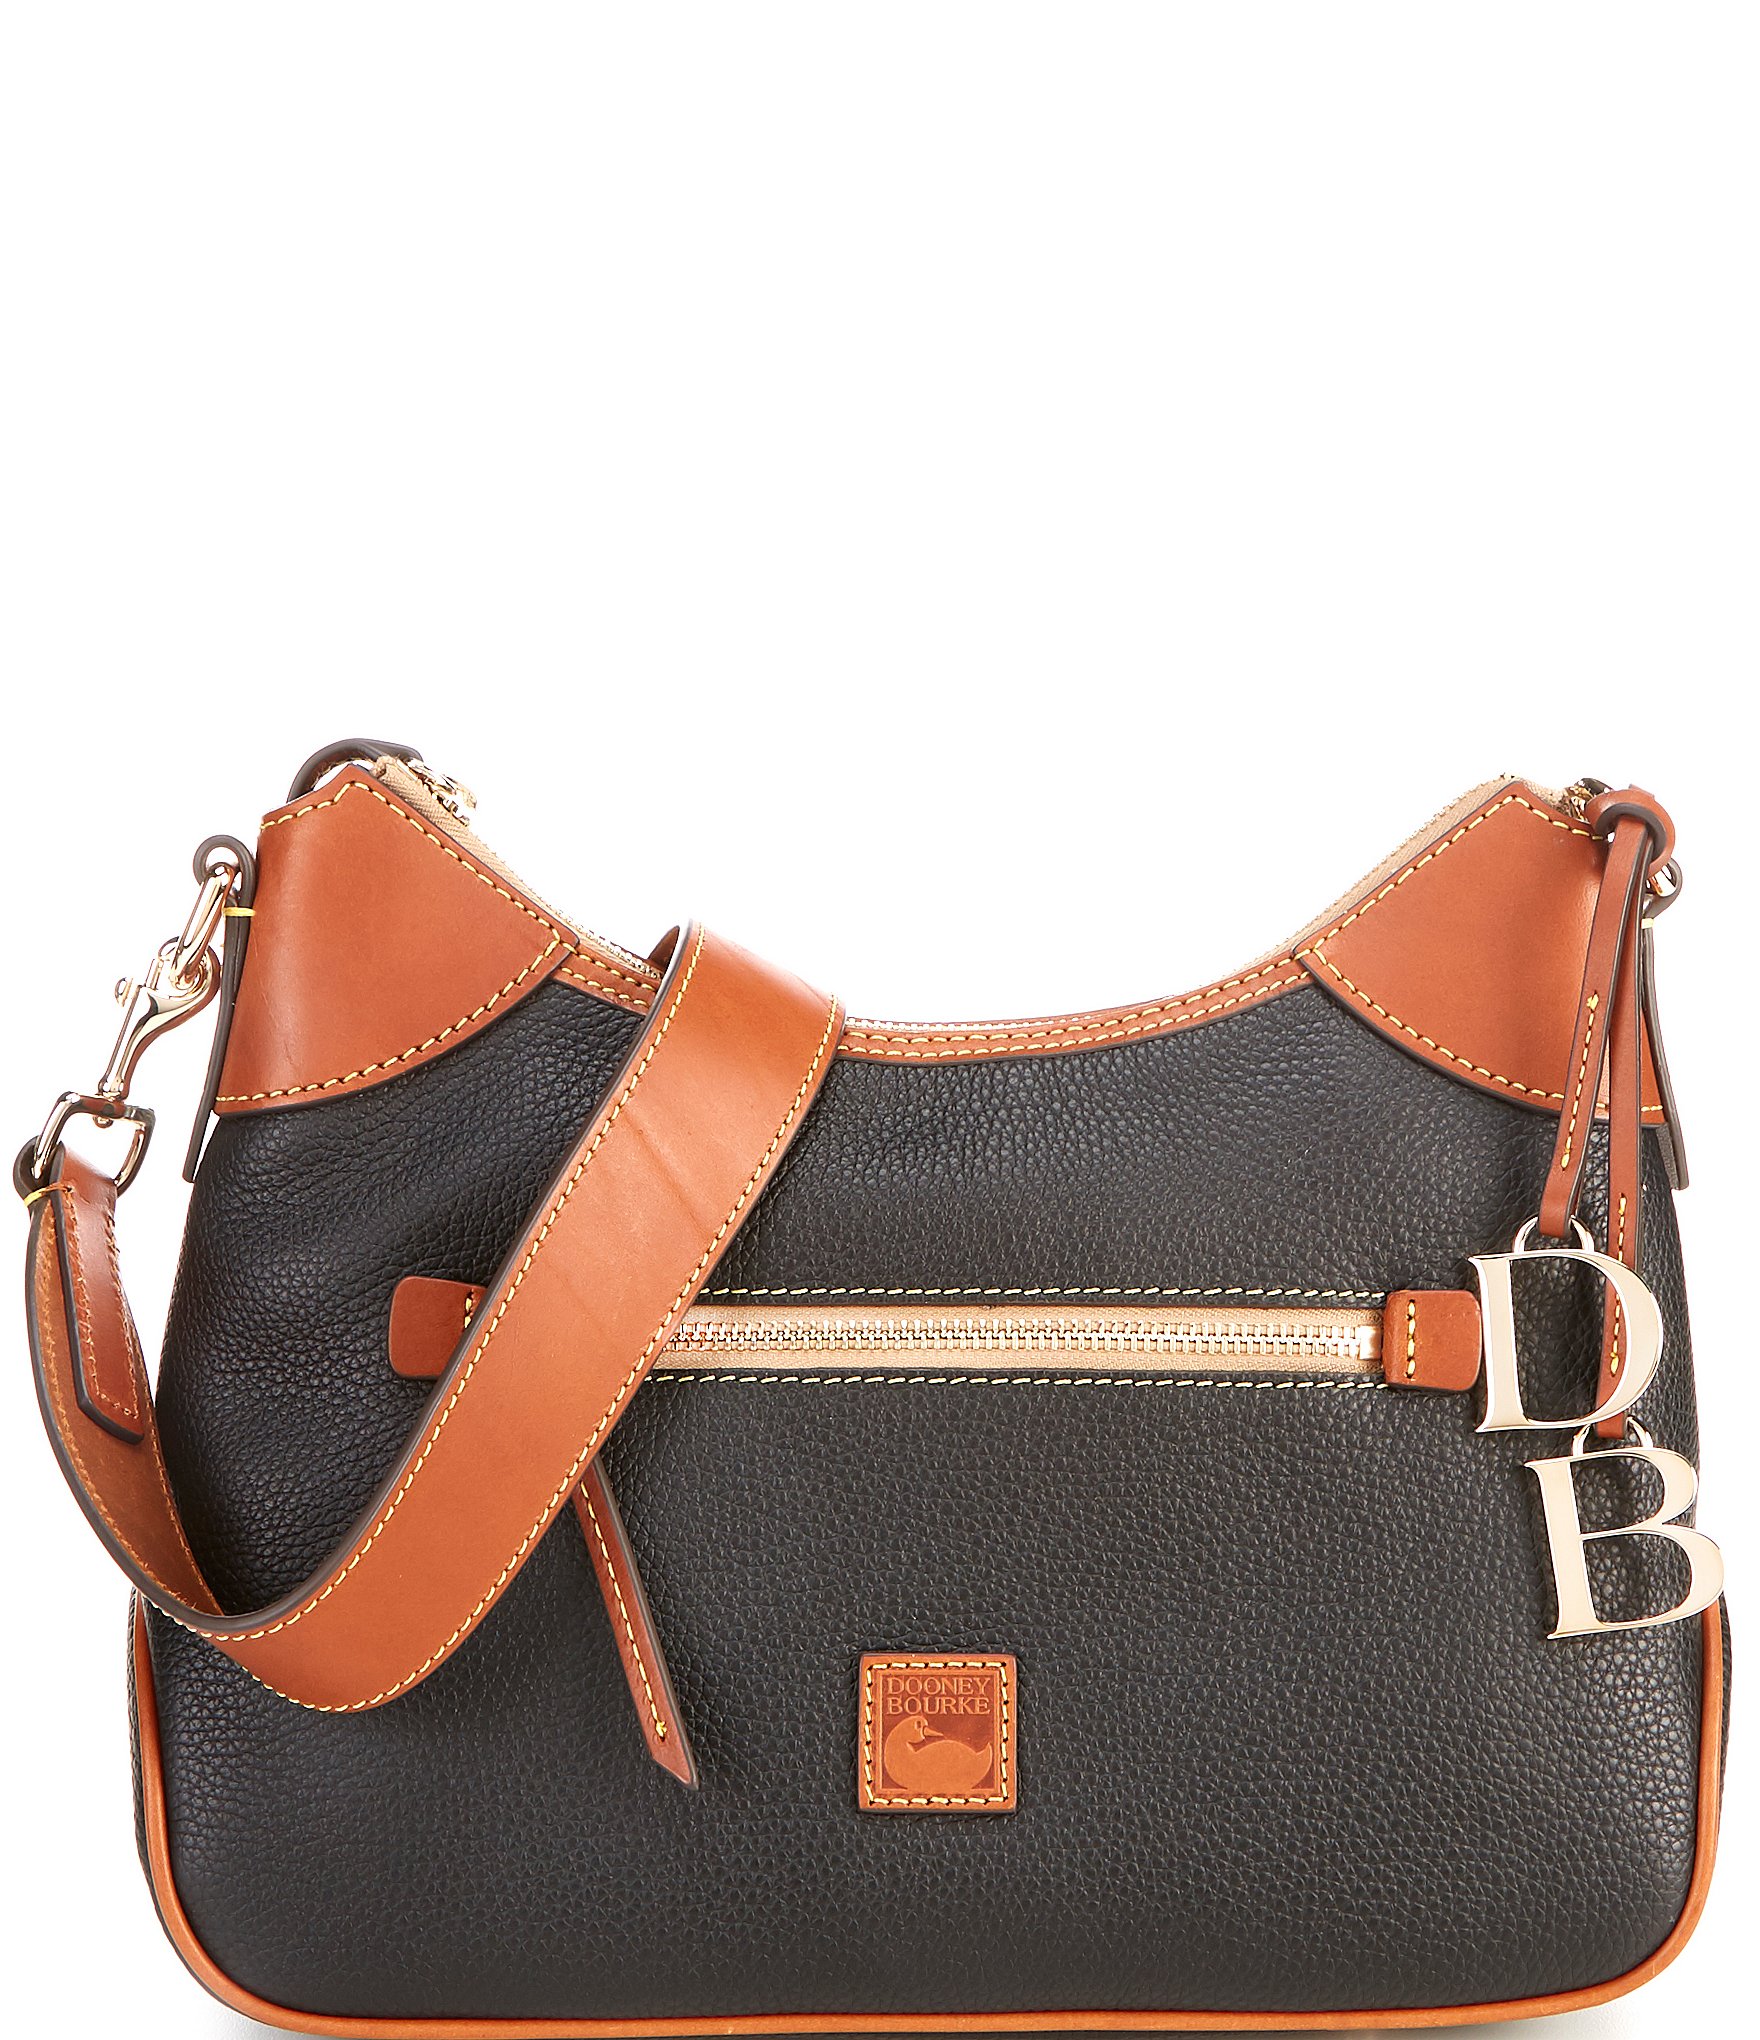 Dooney & Bourke Pebble Leather Hobo Bag